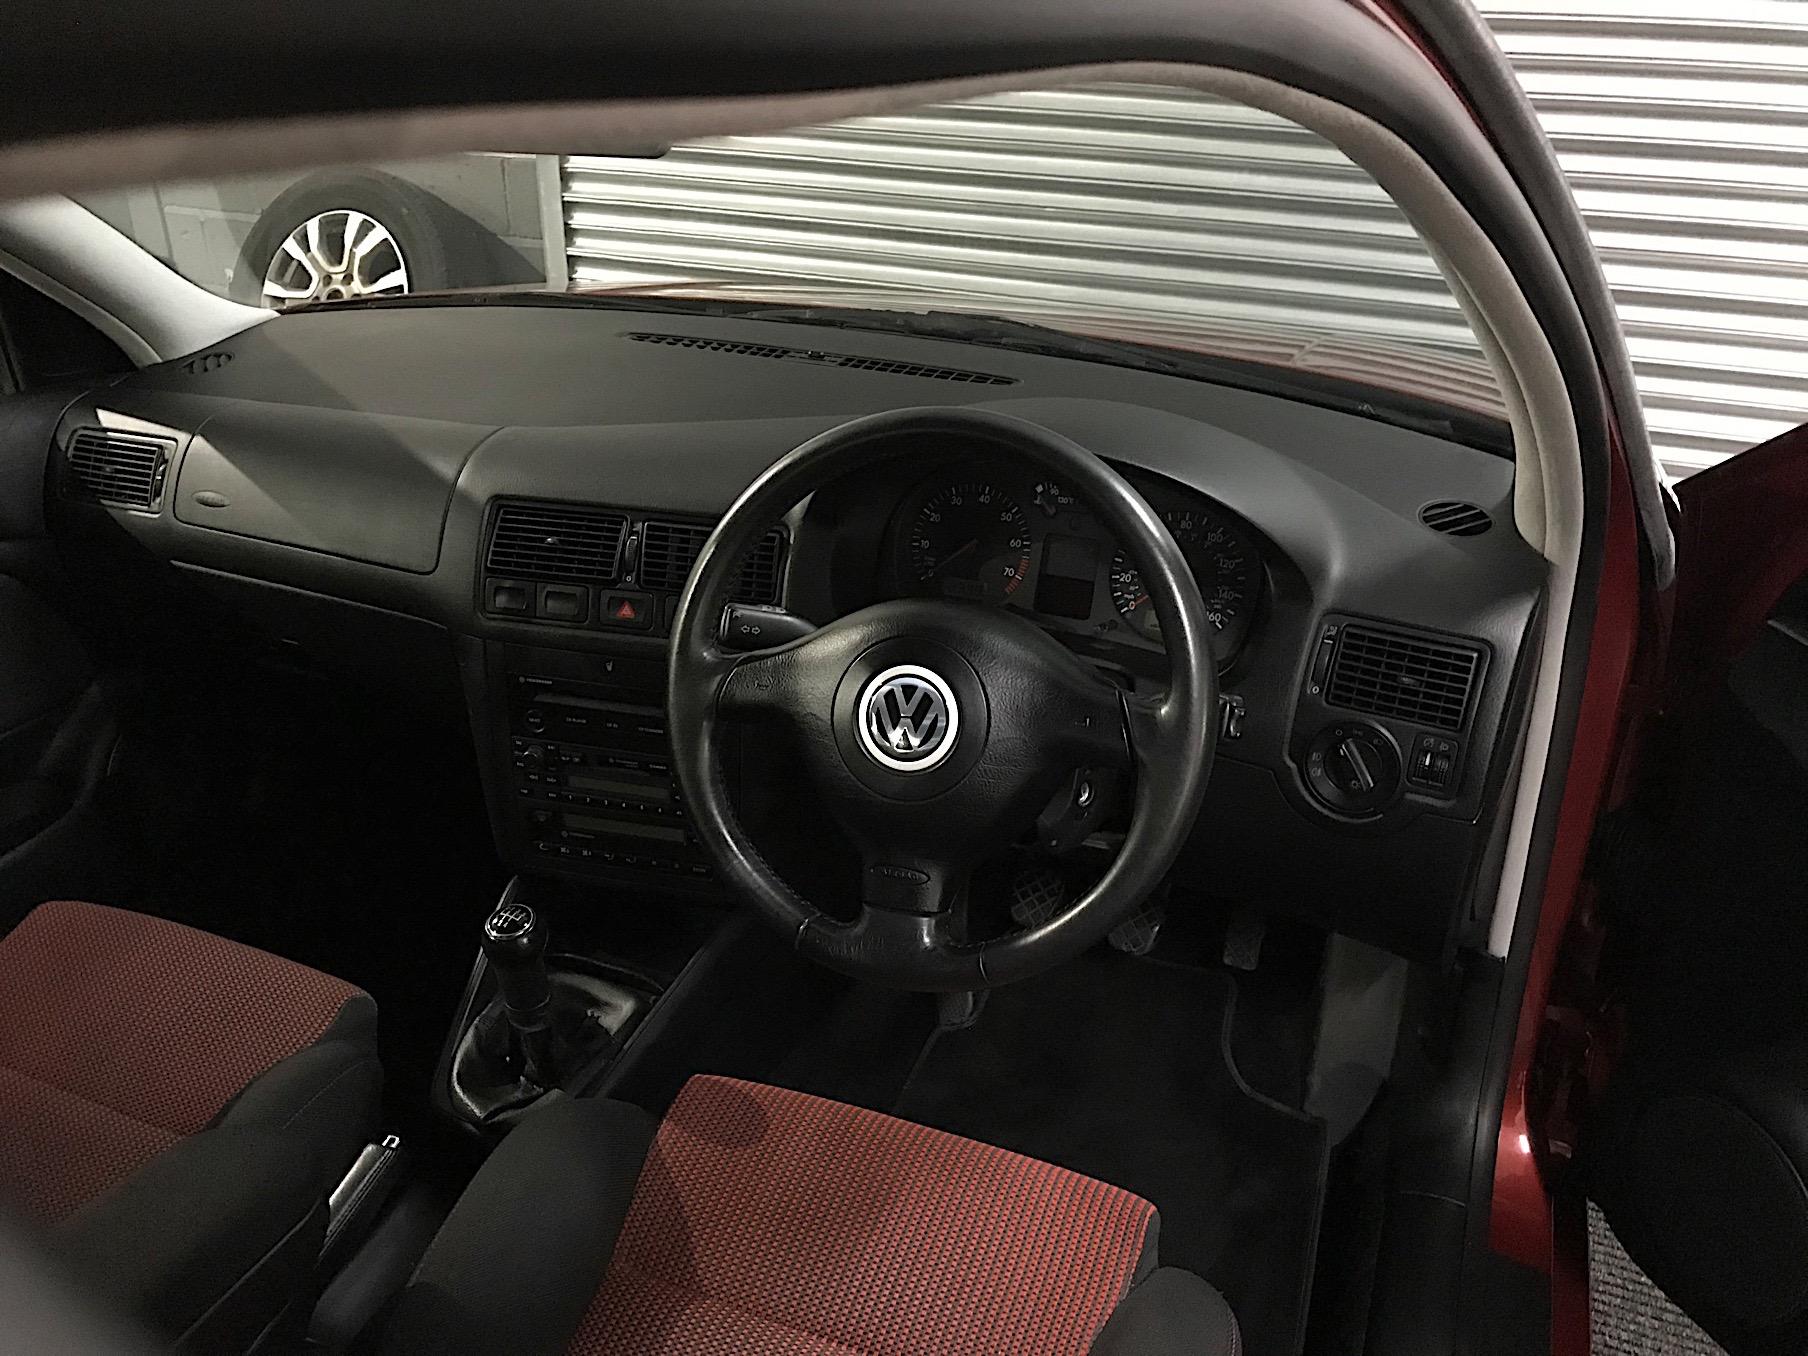 2000 Volkswagen Mk4 Golf GTi